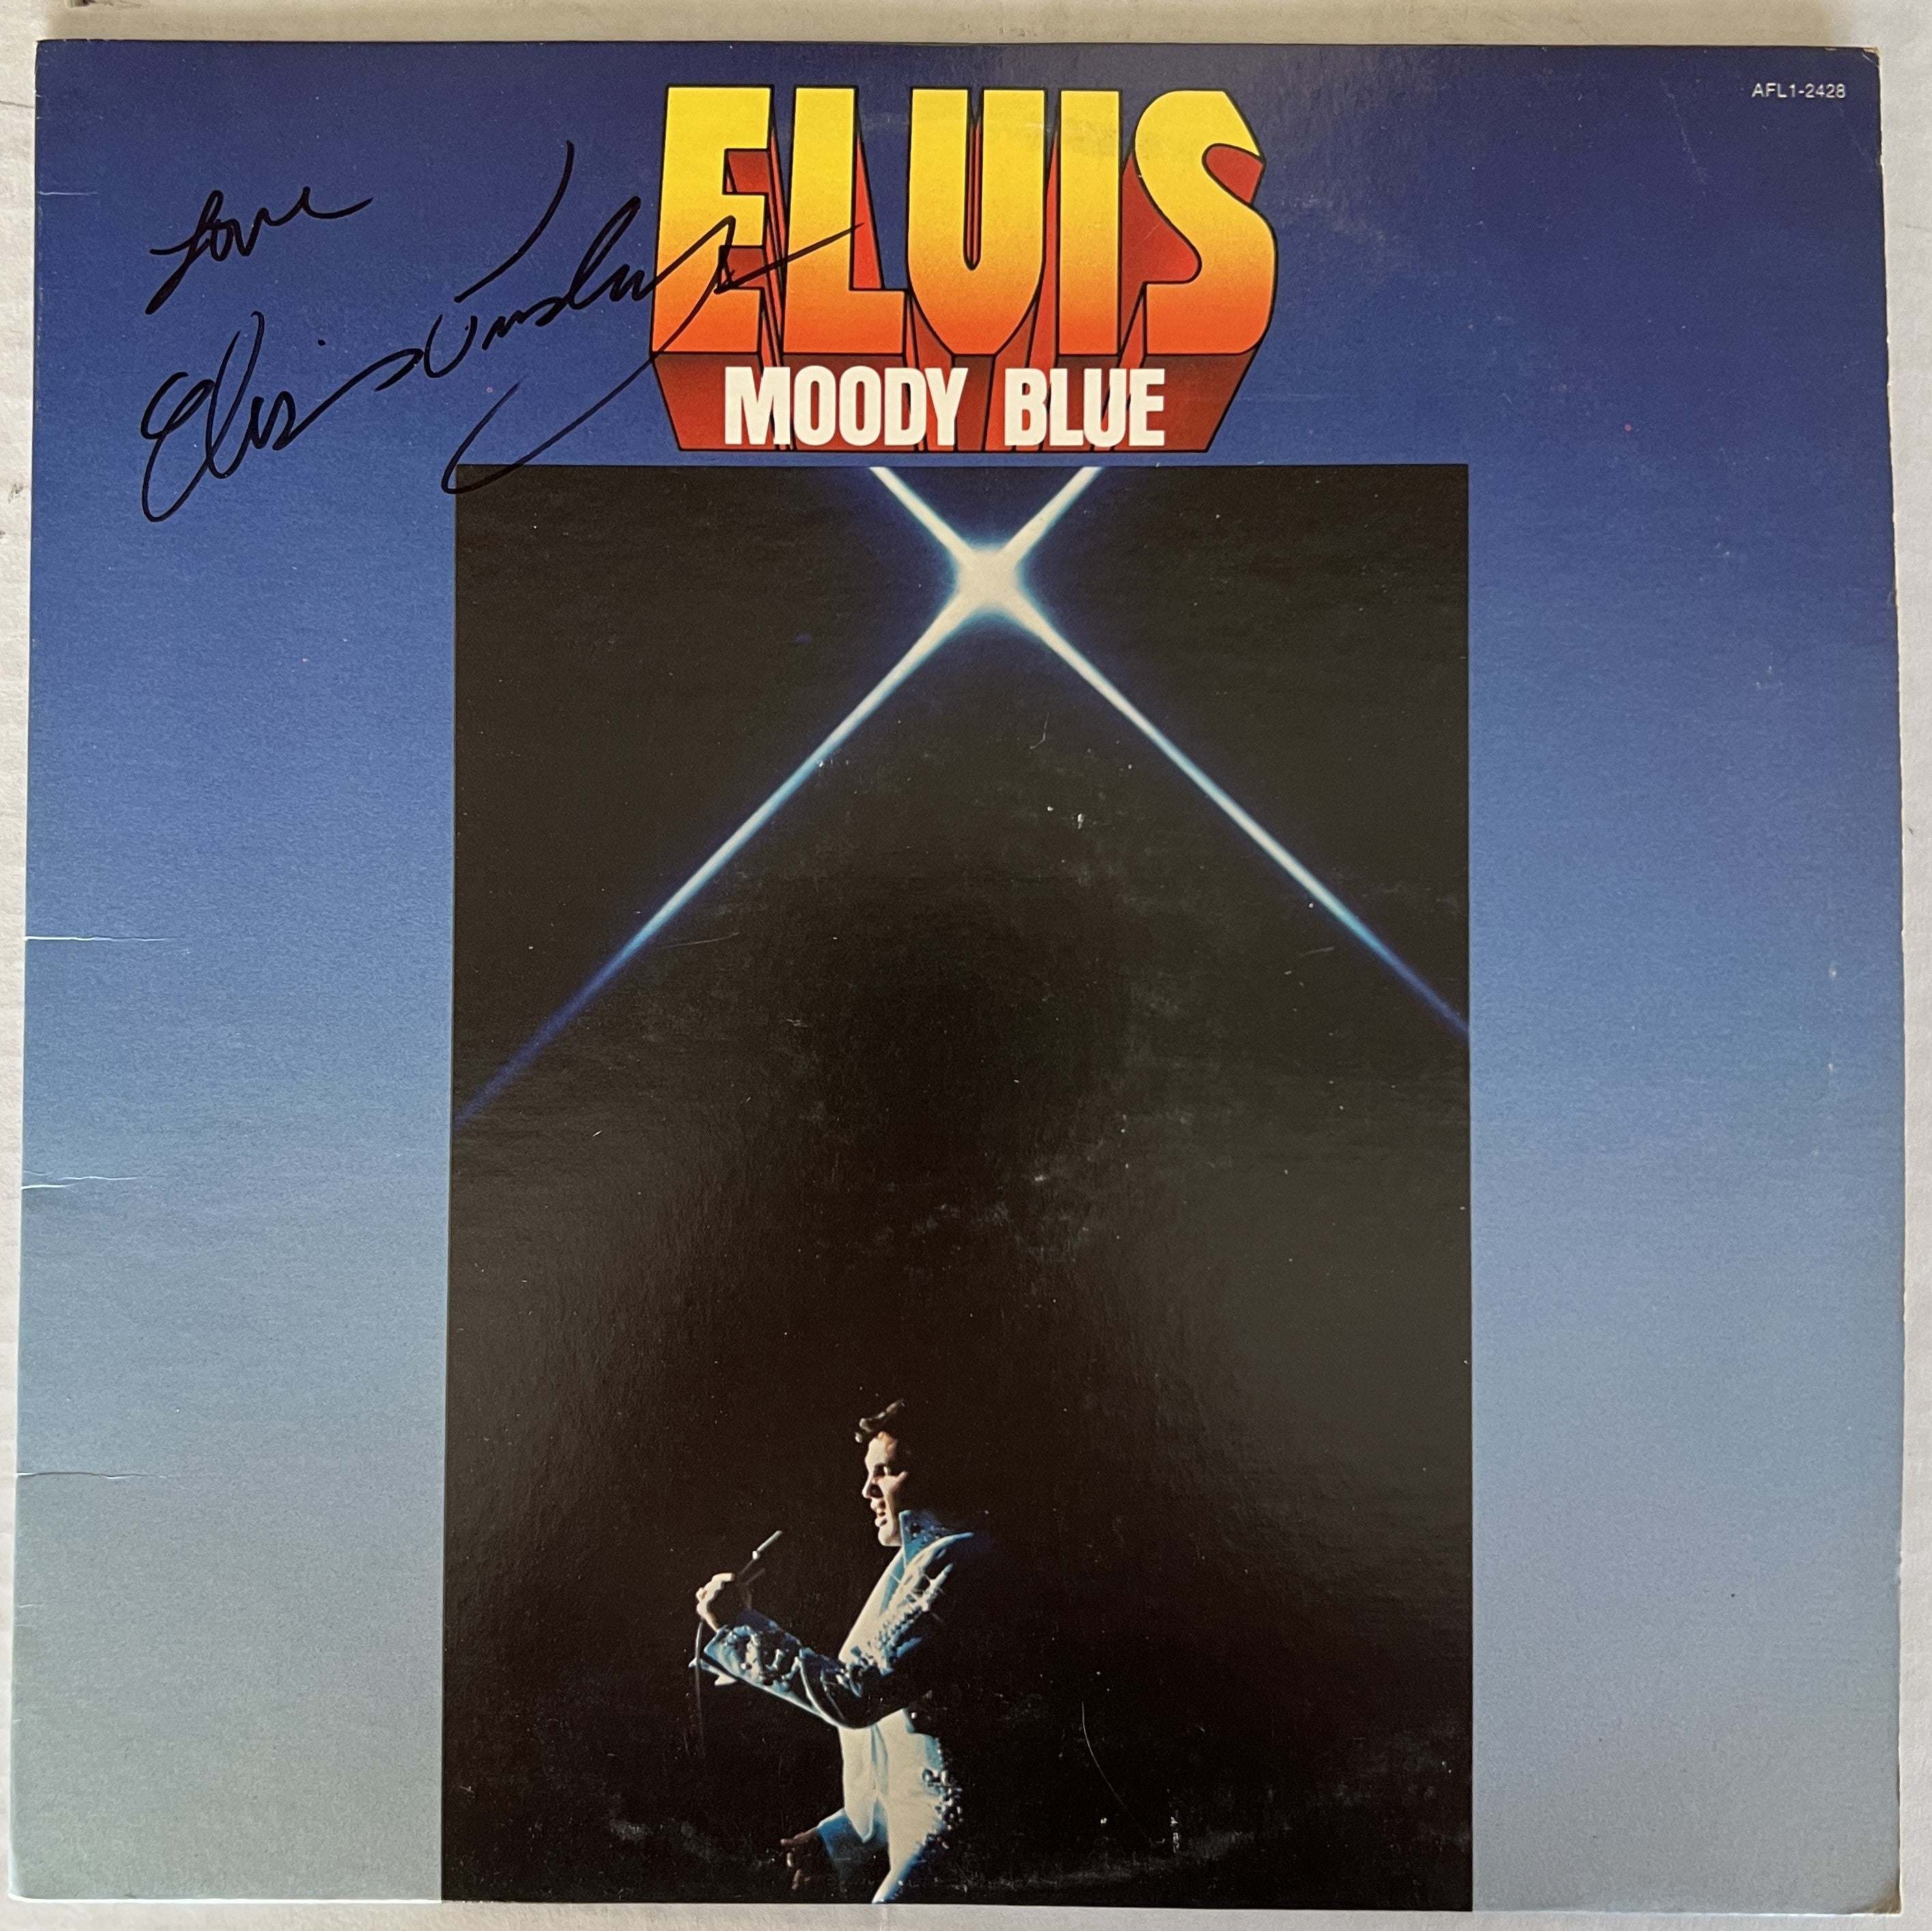 Elvis Presley "moody blue" LP signed